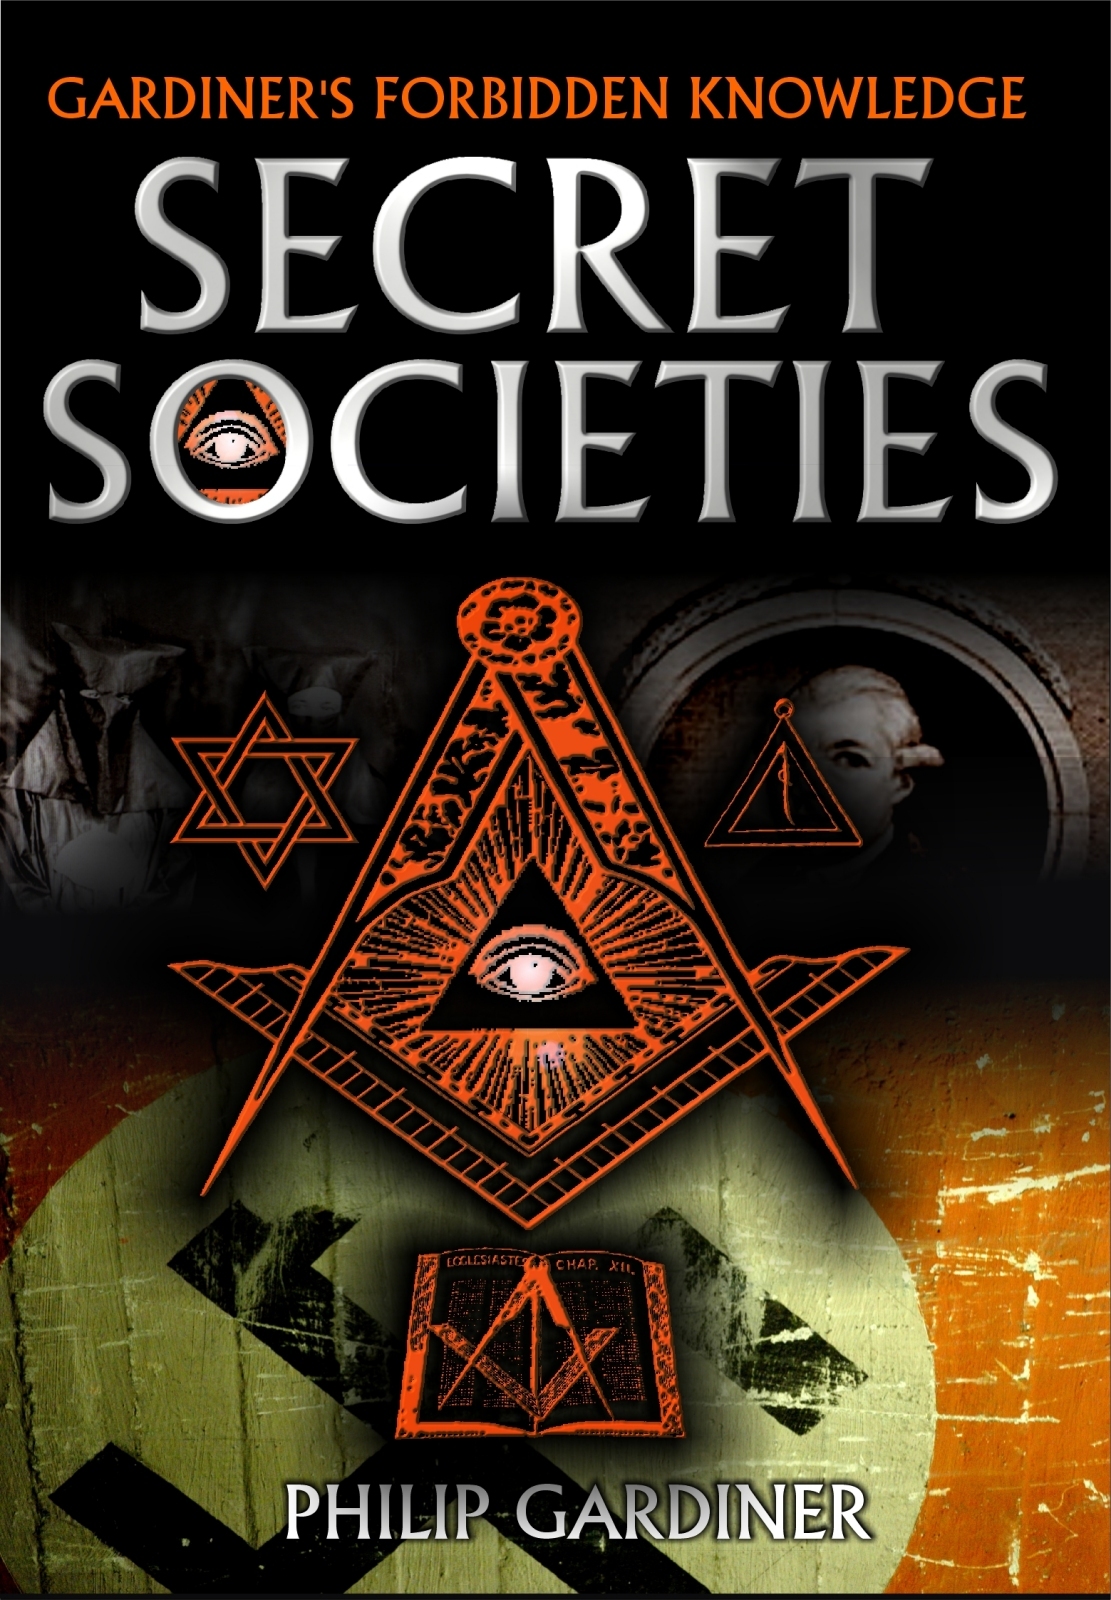 Secret Societies (2007) Screenshot 1